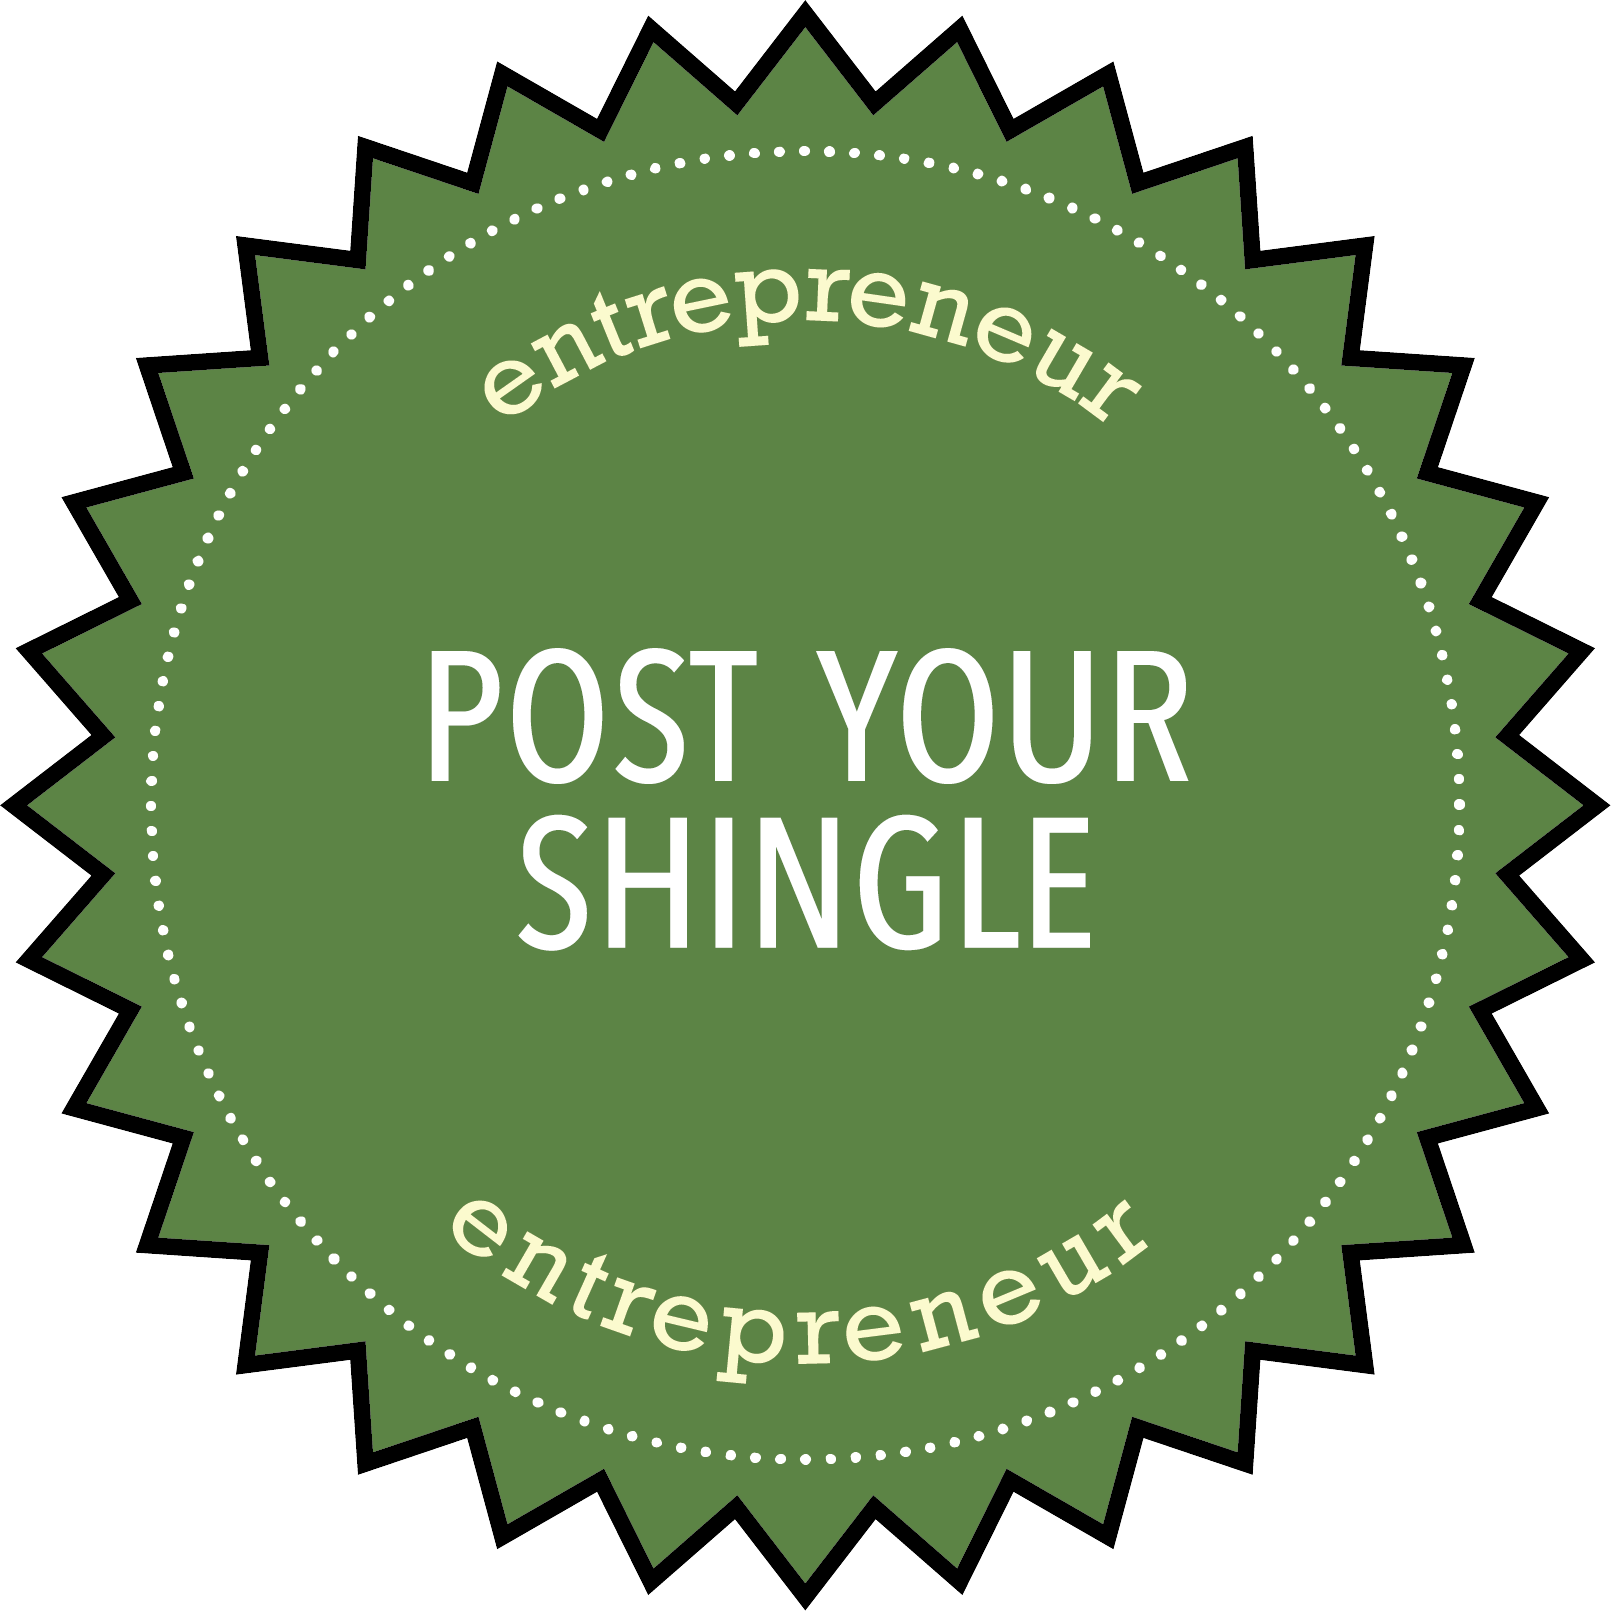 Entrepreneurship: Post Your Shingle